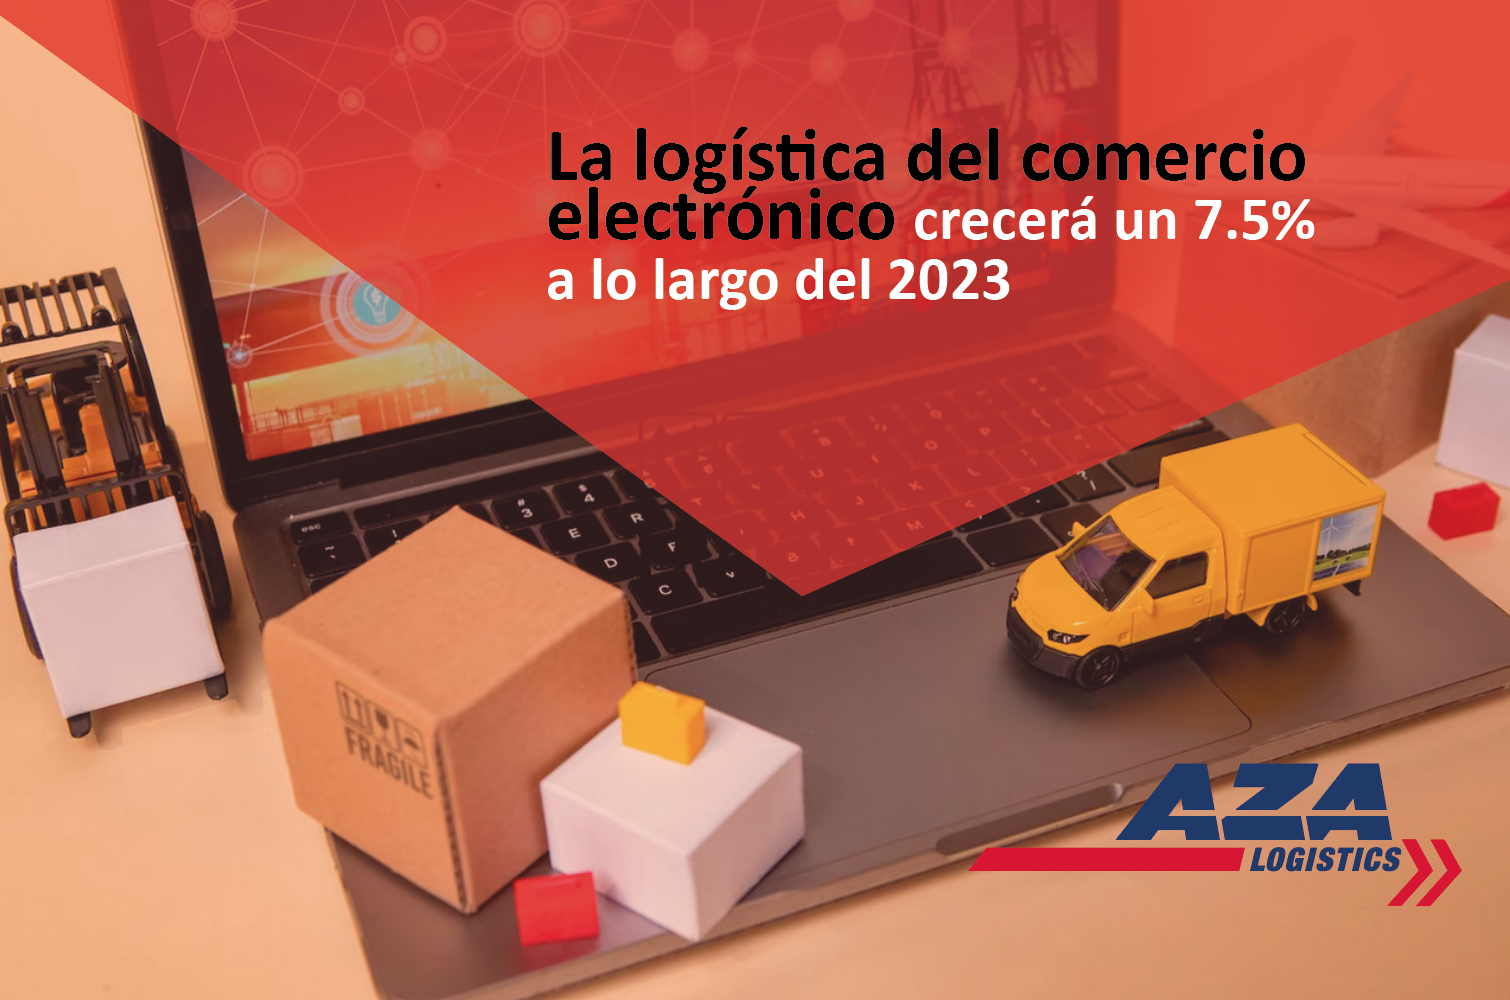 La logística del comercio electrónico crecerá un 7.5% a lo largo del 2023